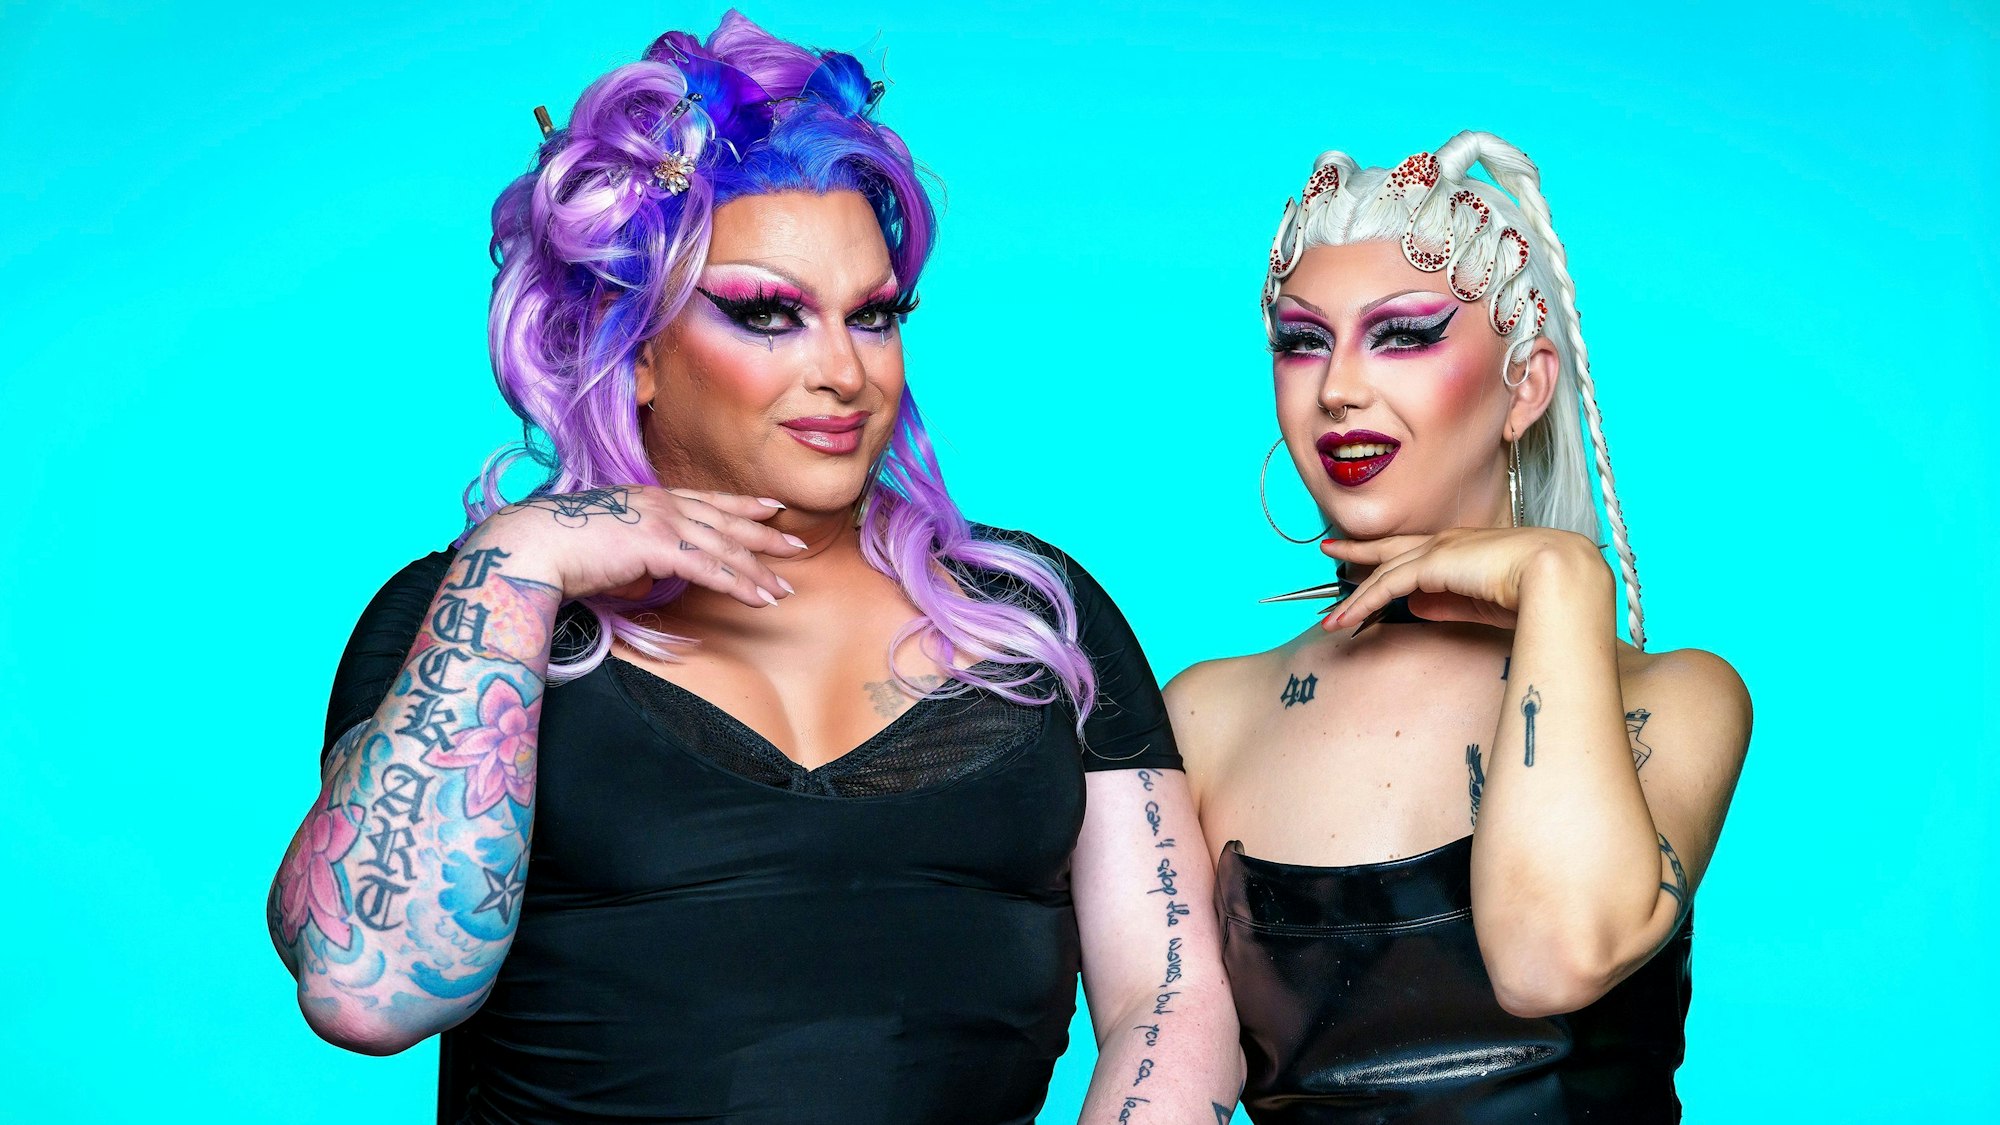 Die beiden Drag Queens posieren für die Kamera. Barbie Breakout hat auffällig violette Haare, beide sind geschminkt und tragen schwarze Kleidung.